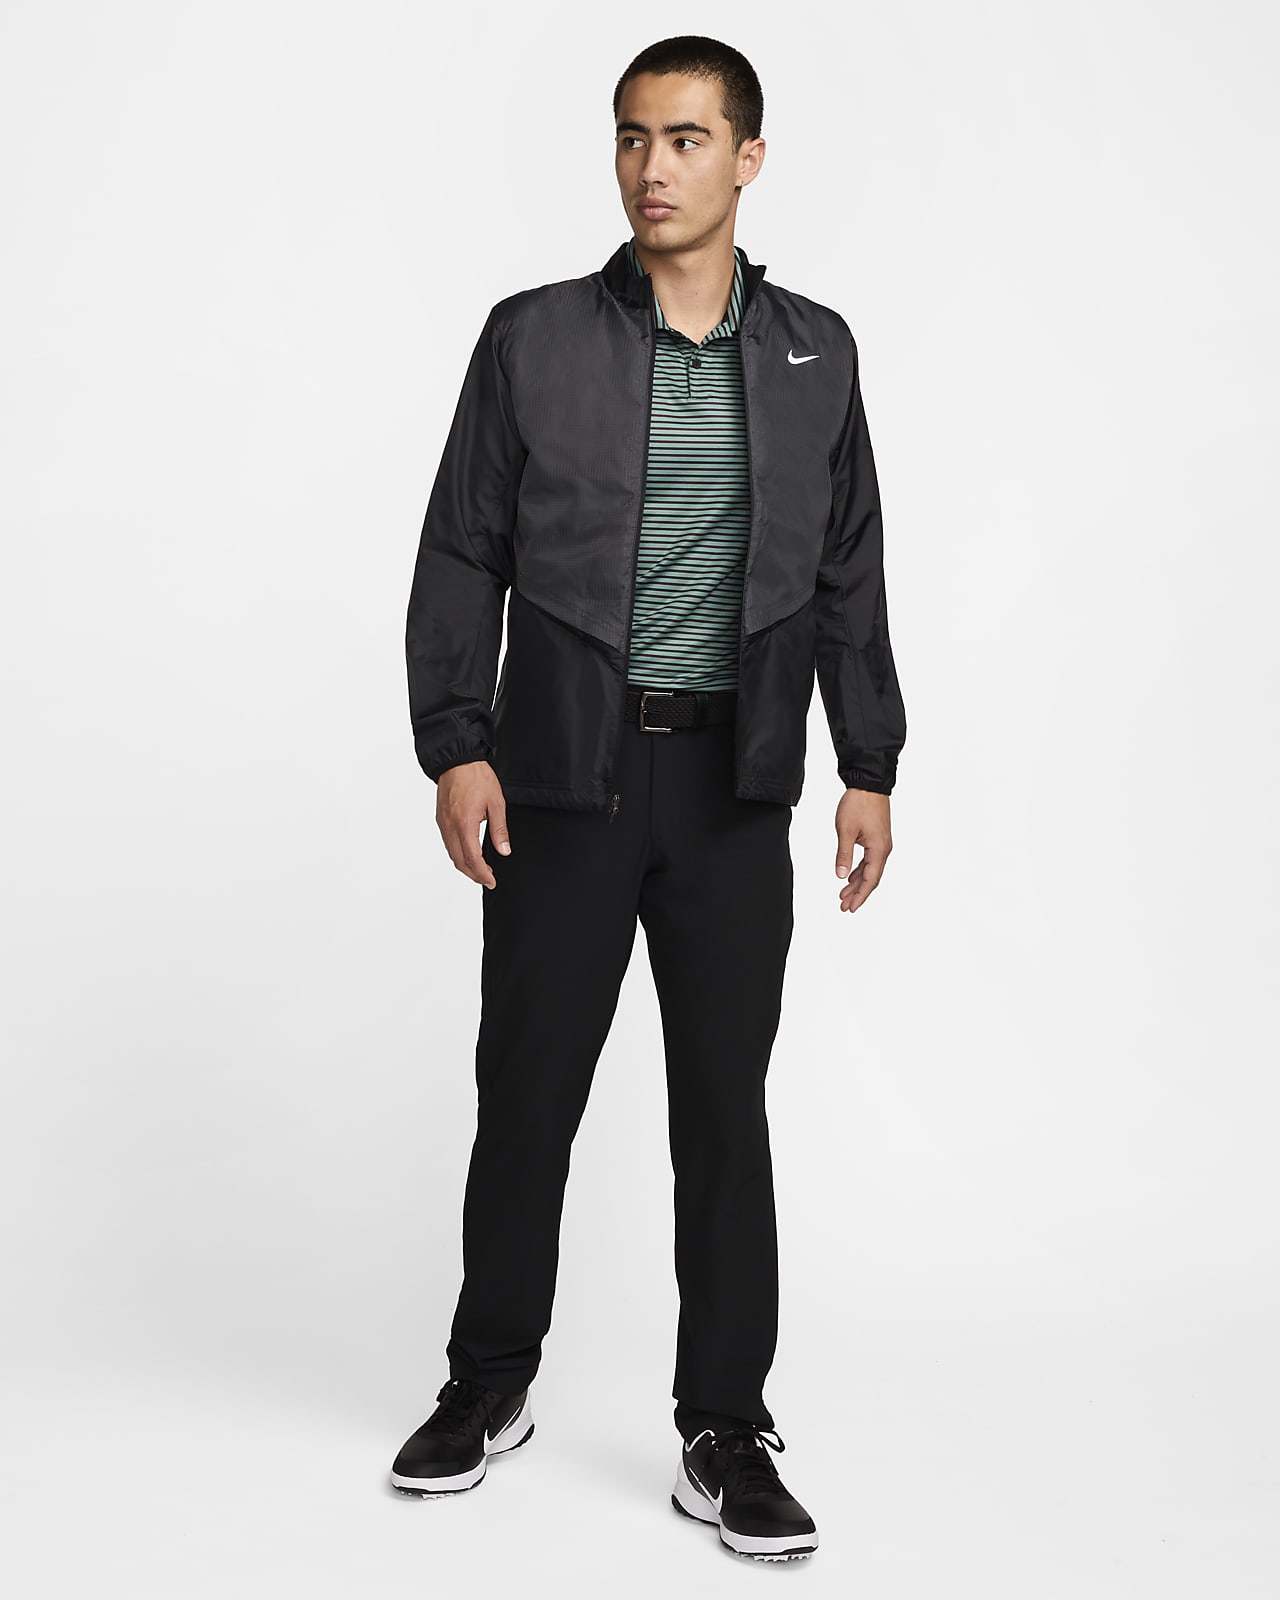 【ナイキ公式】メンズ Therma-FIT レペル フルジップ ゴルフジャケット ブラック メンズ S Nike Men's Therma-FIT Repel Full-Zip GOLF Jacket